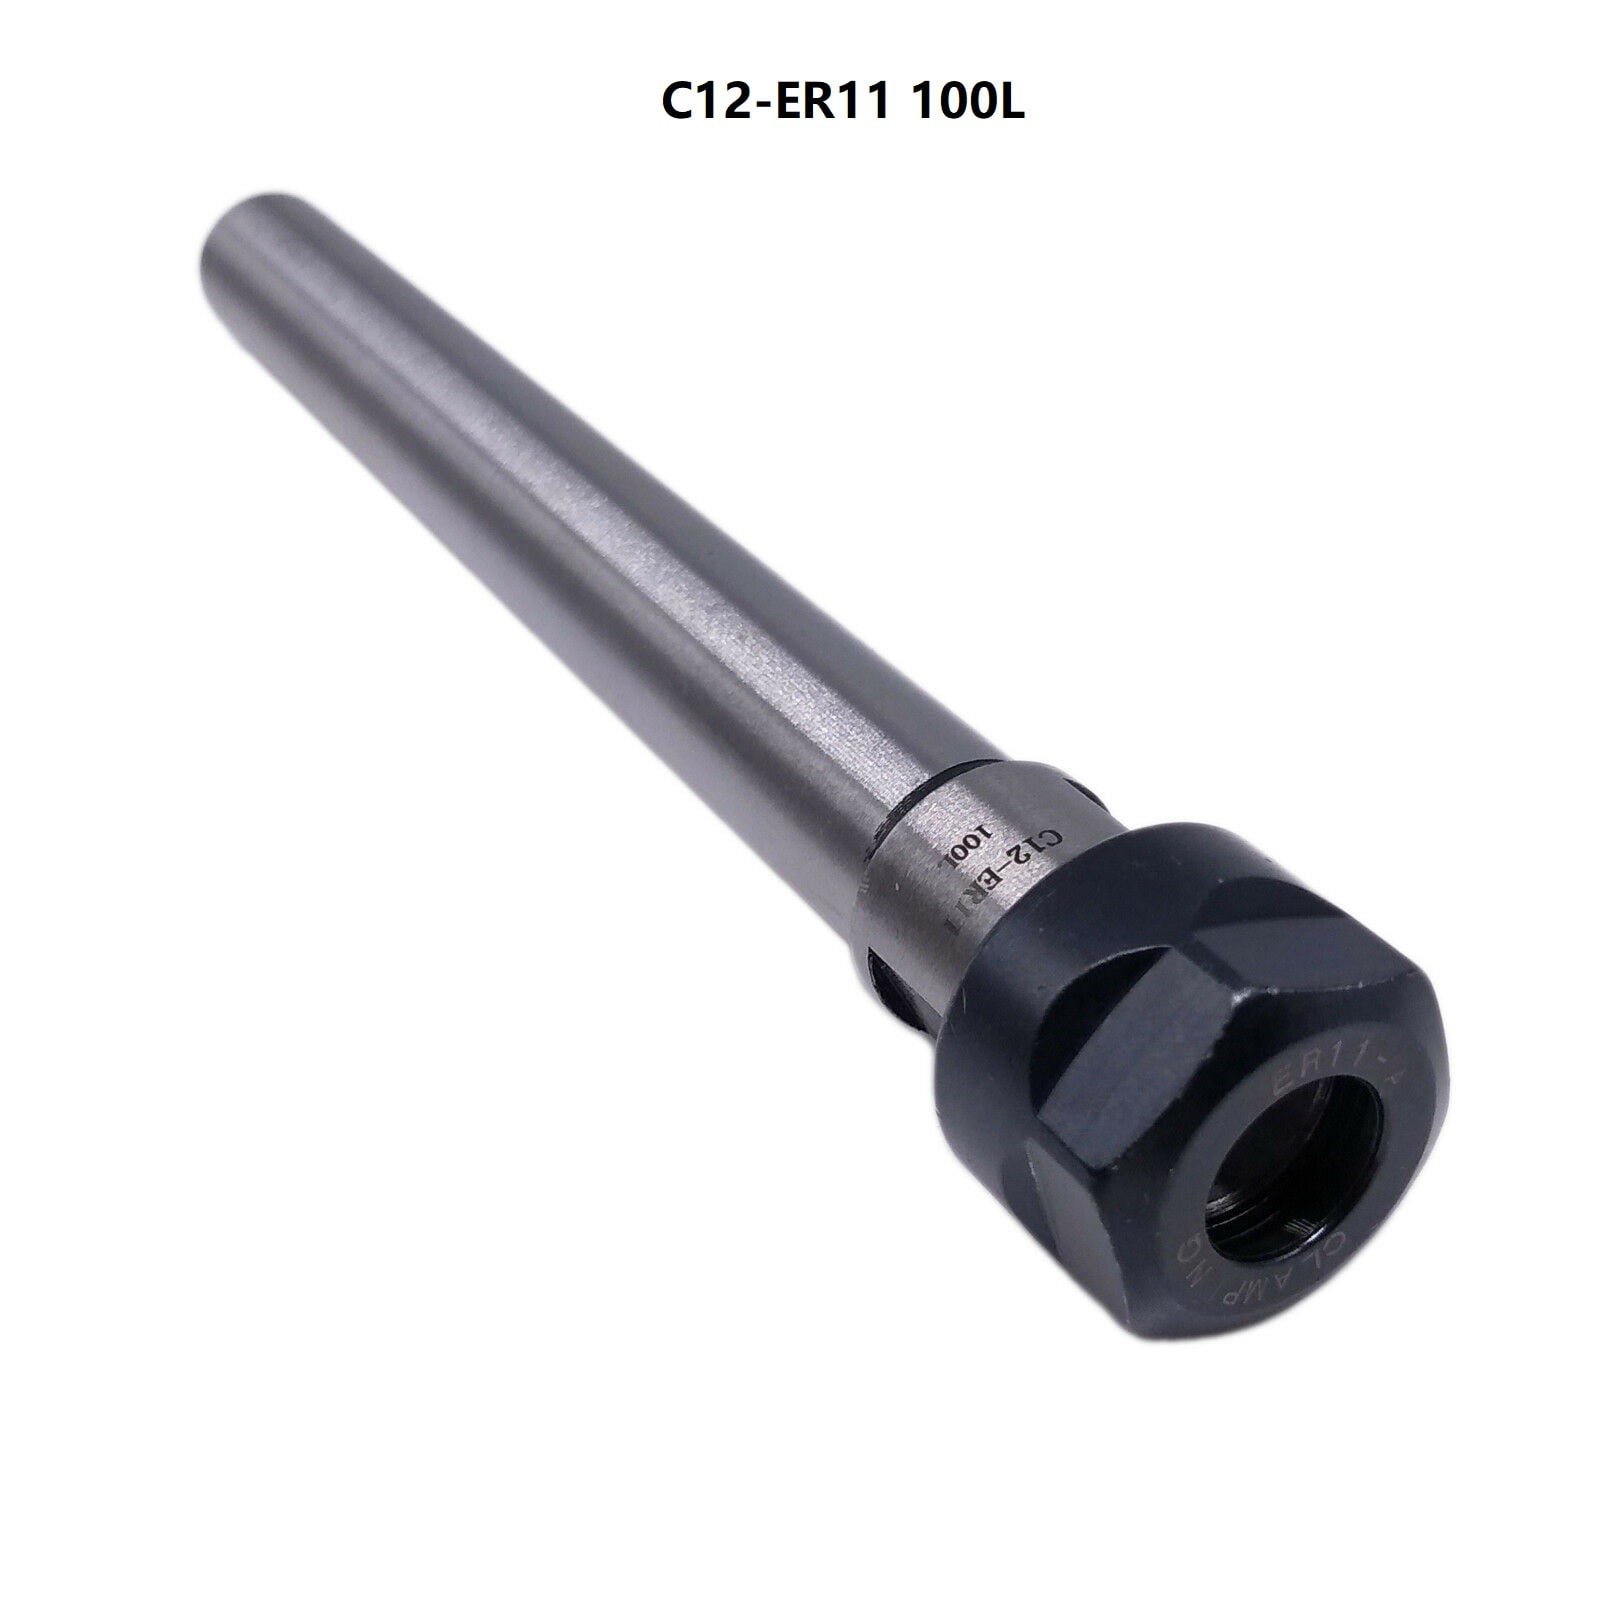 C10-ER11A-100L Collet Chuck Holder Tool CNC Milling Extension Rod PT 